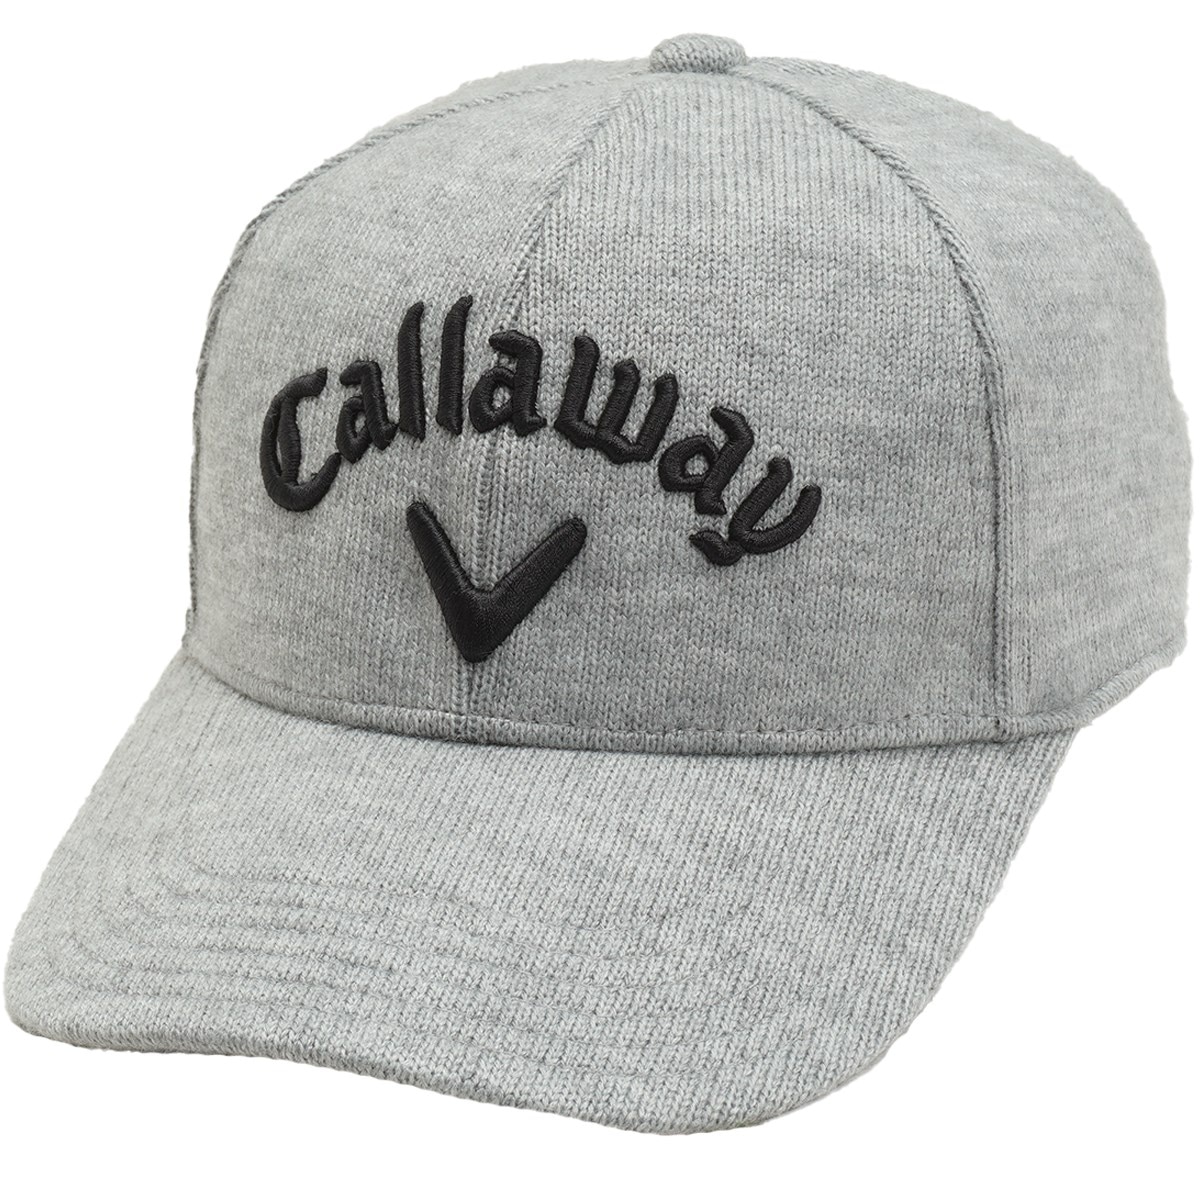 処分セール Callaway キャロウェイ ゴルフ メンズ 天竺編みニットキャップ C23291108 帽子 吸汗速乾性 ギフト プレゼント